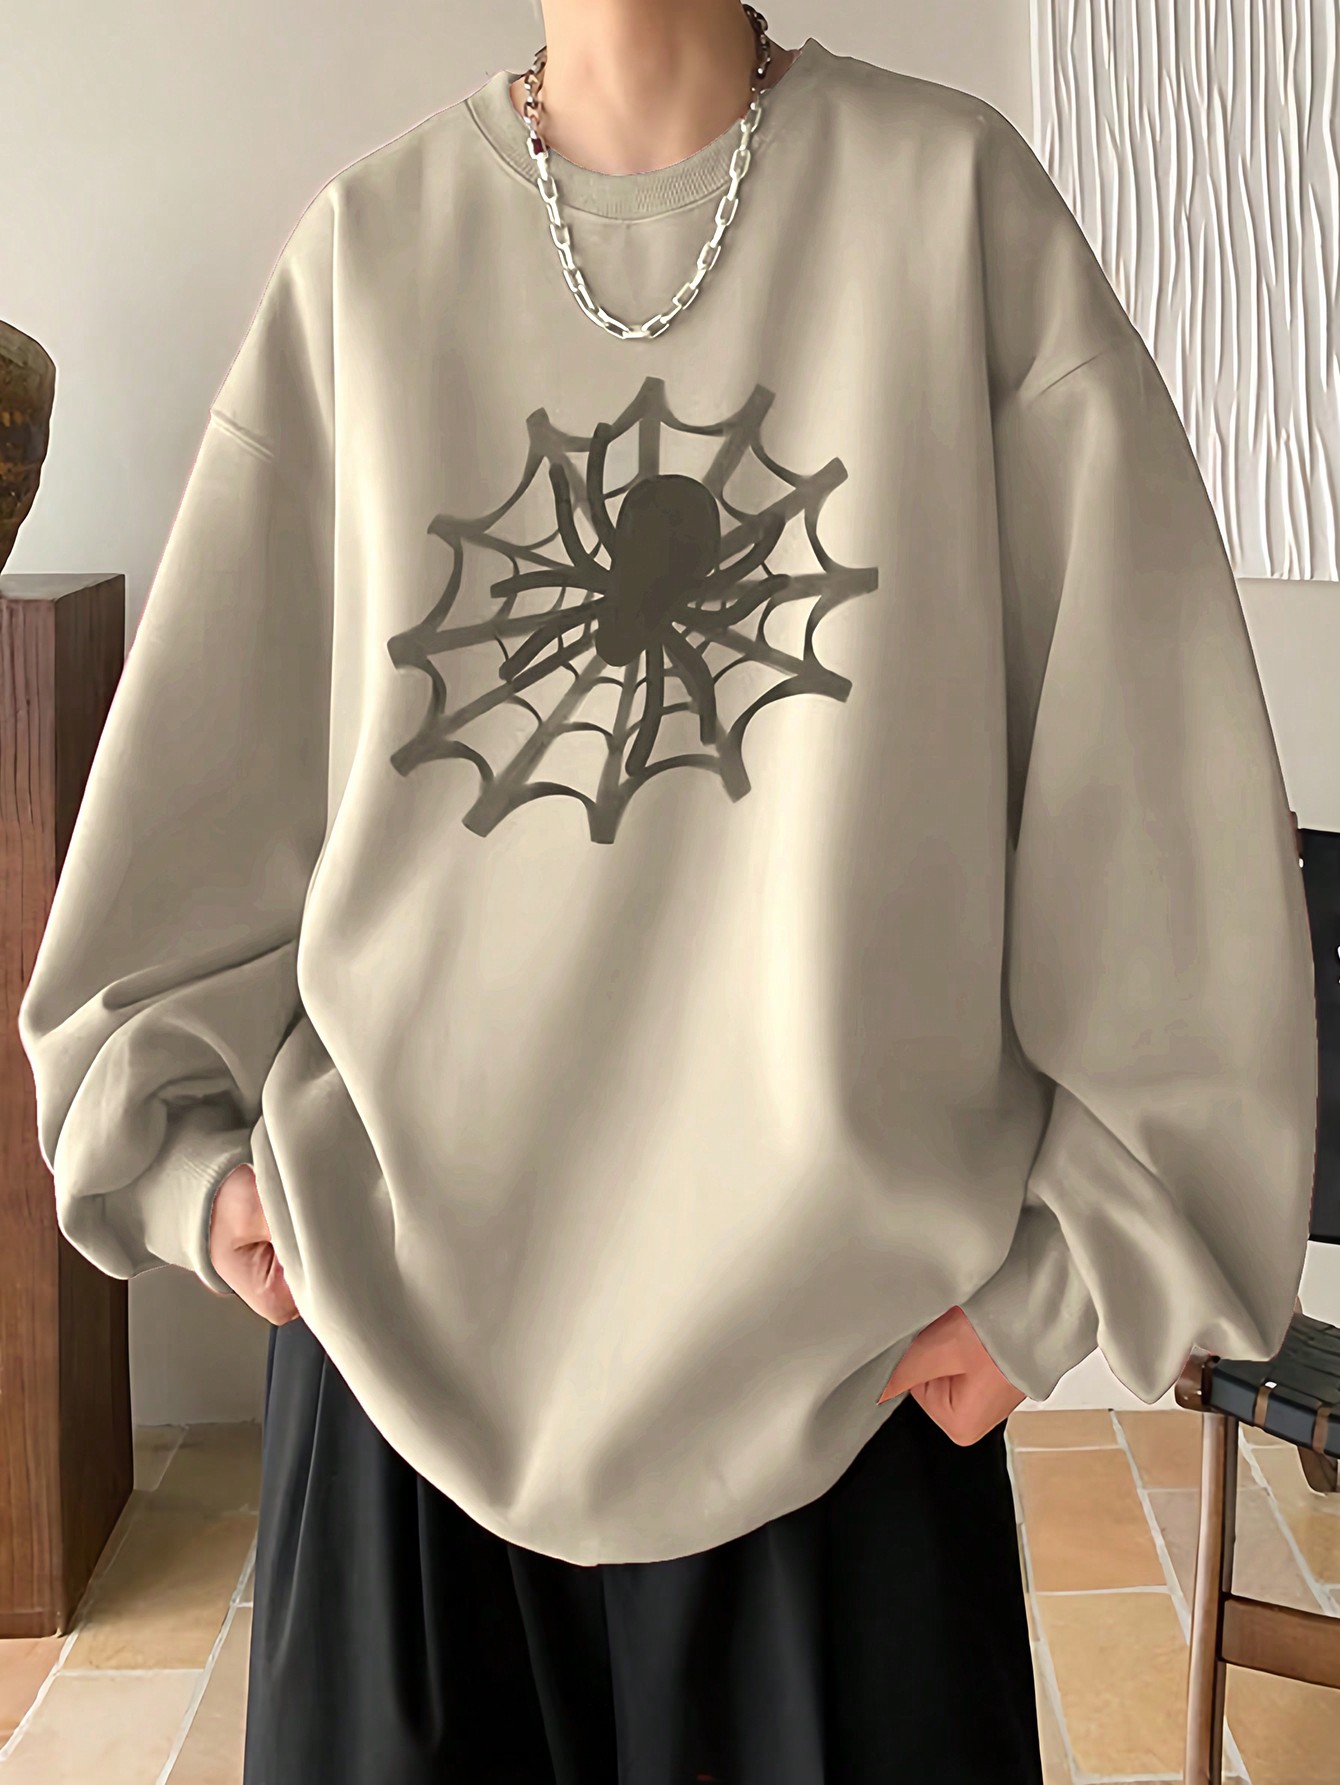 Manfinity EMRG Мужской пуловер свободного кроя с принтом паутины и заниженными плечами, абрикос